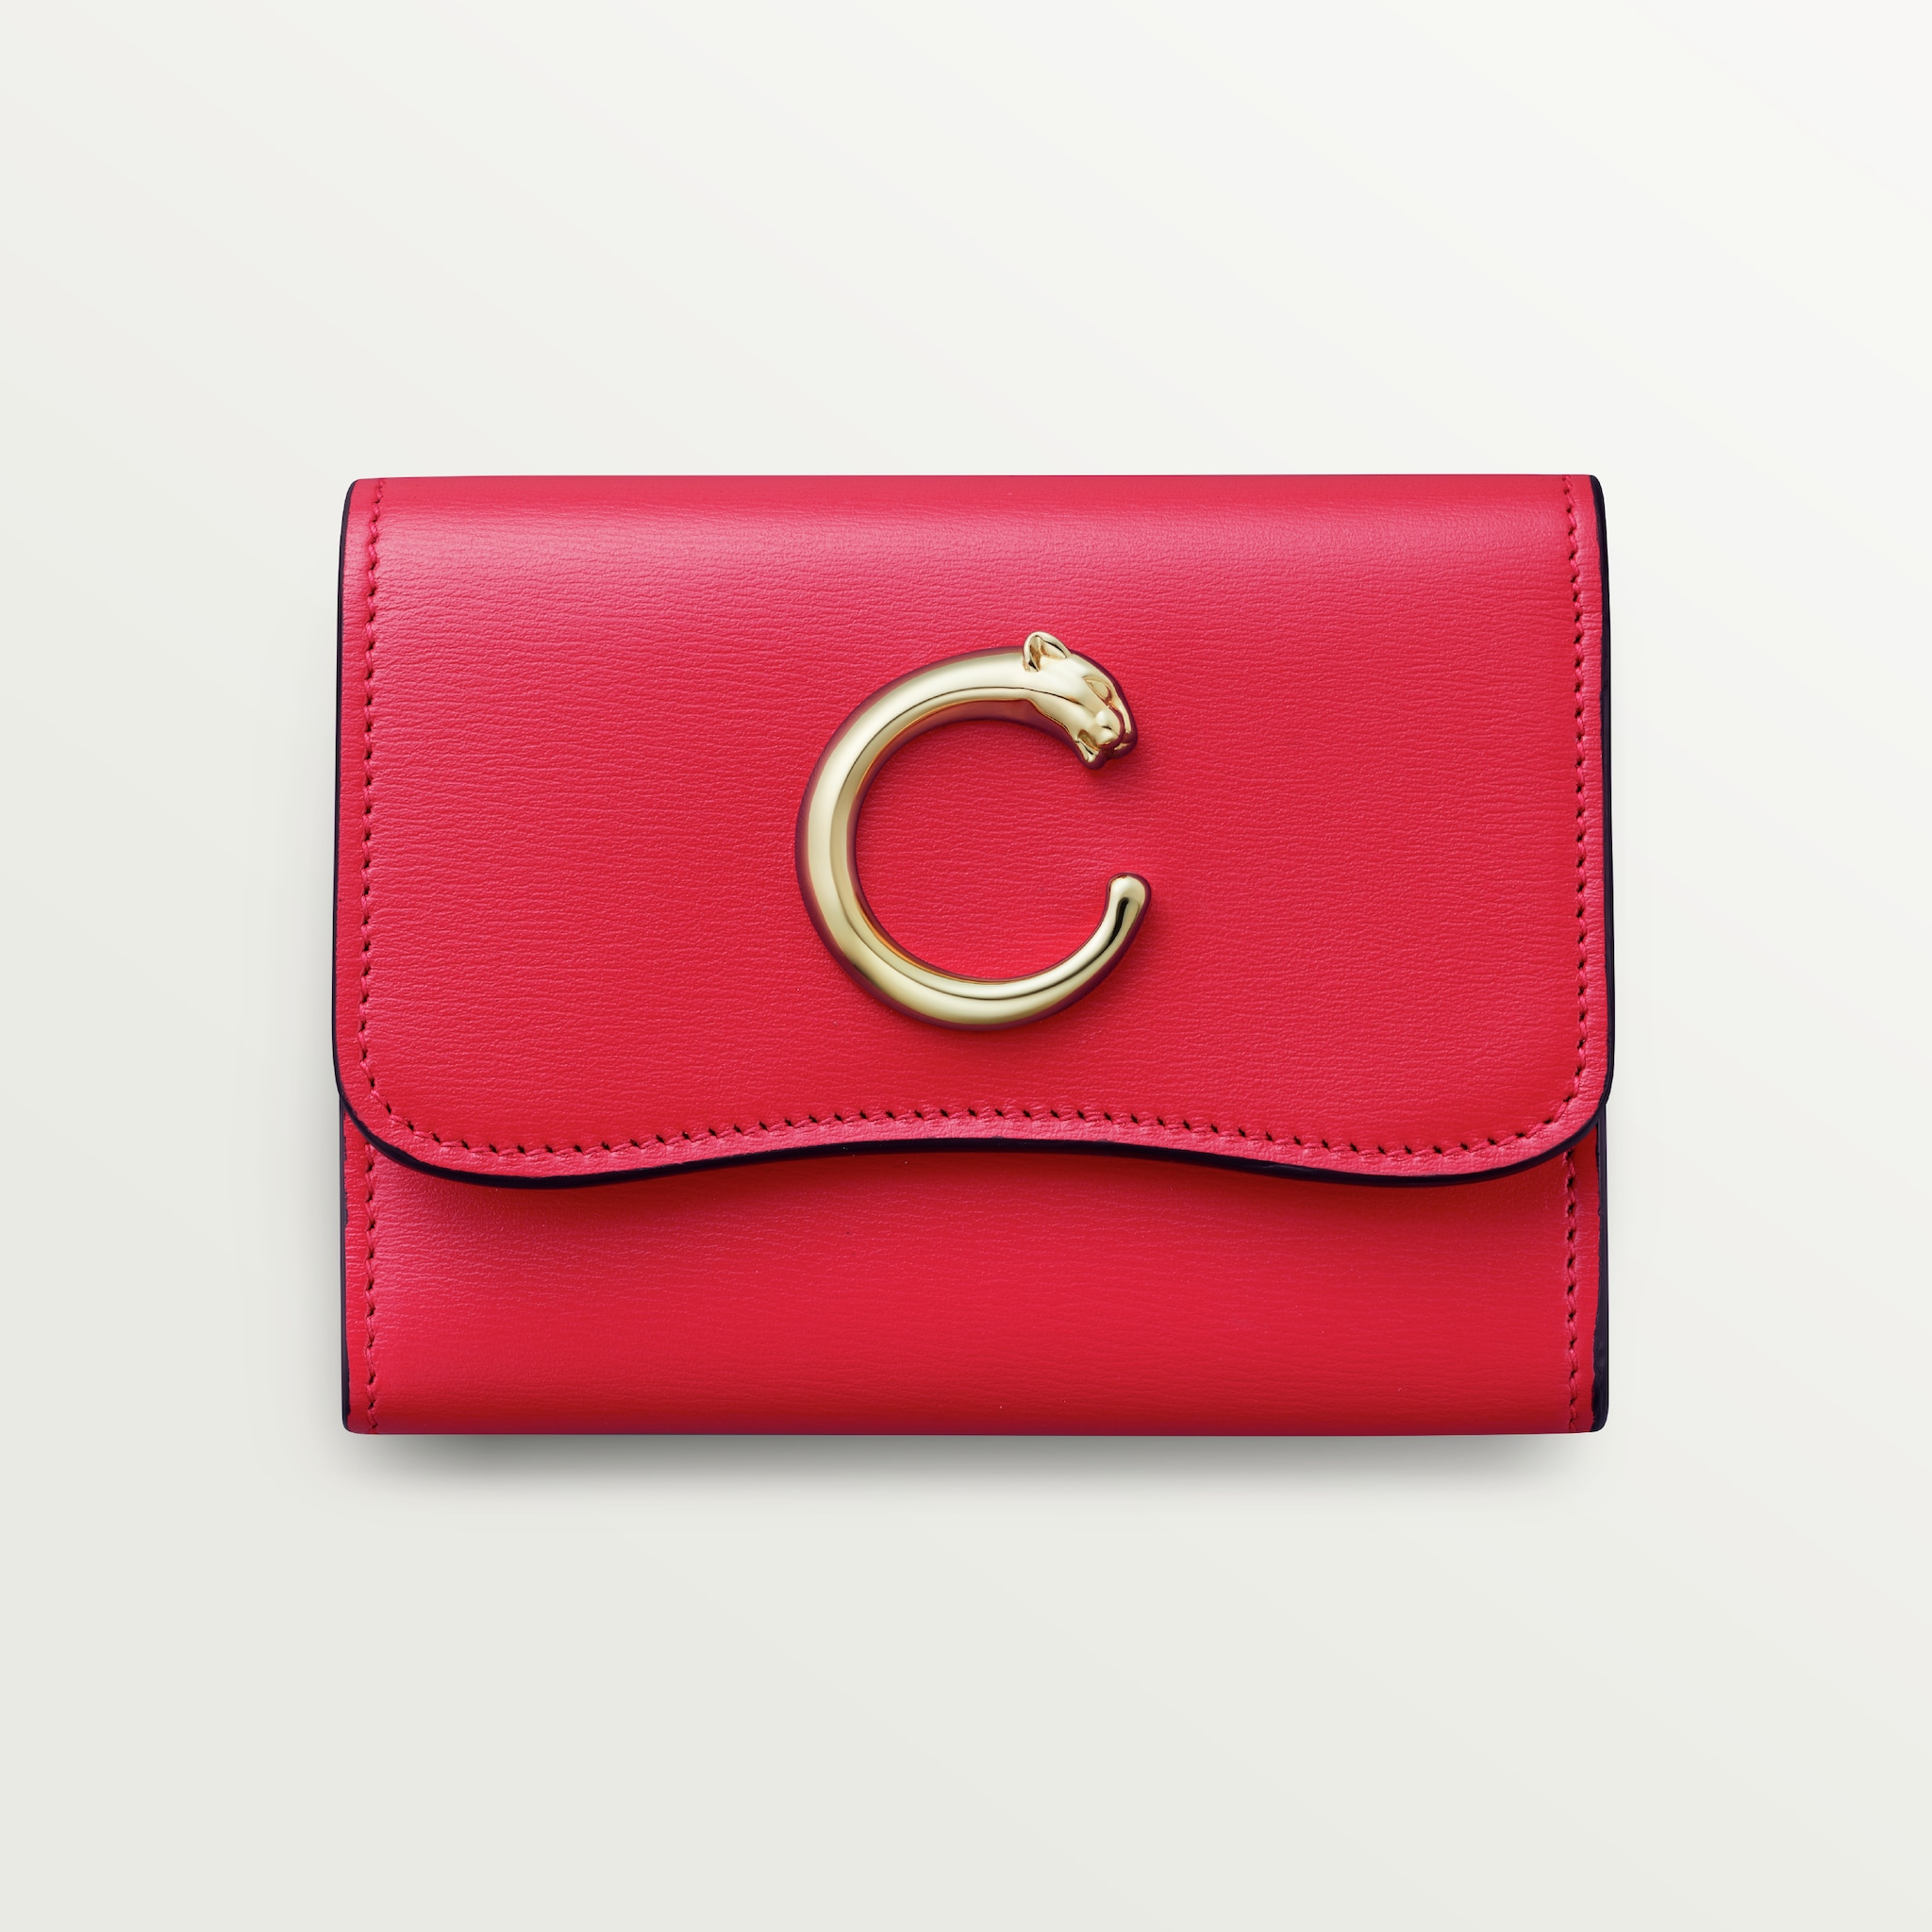 Panthère de Cartier Small Leather Goods, compact walletPoppy calfskin, golden finish